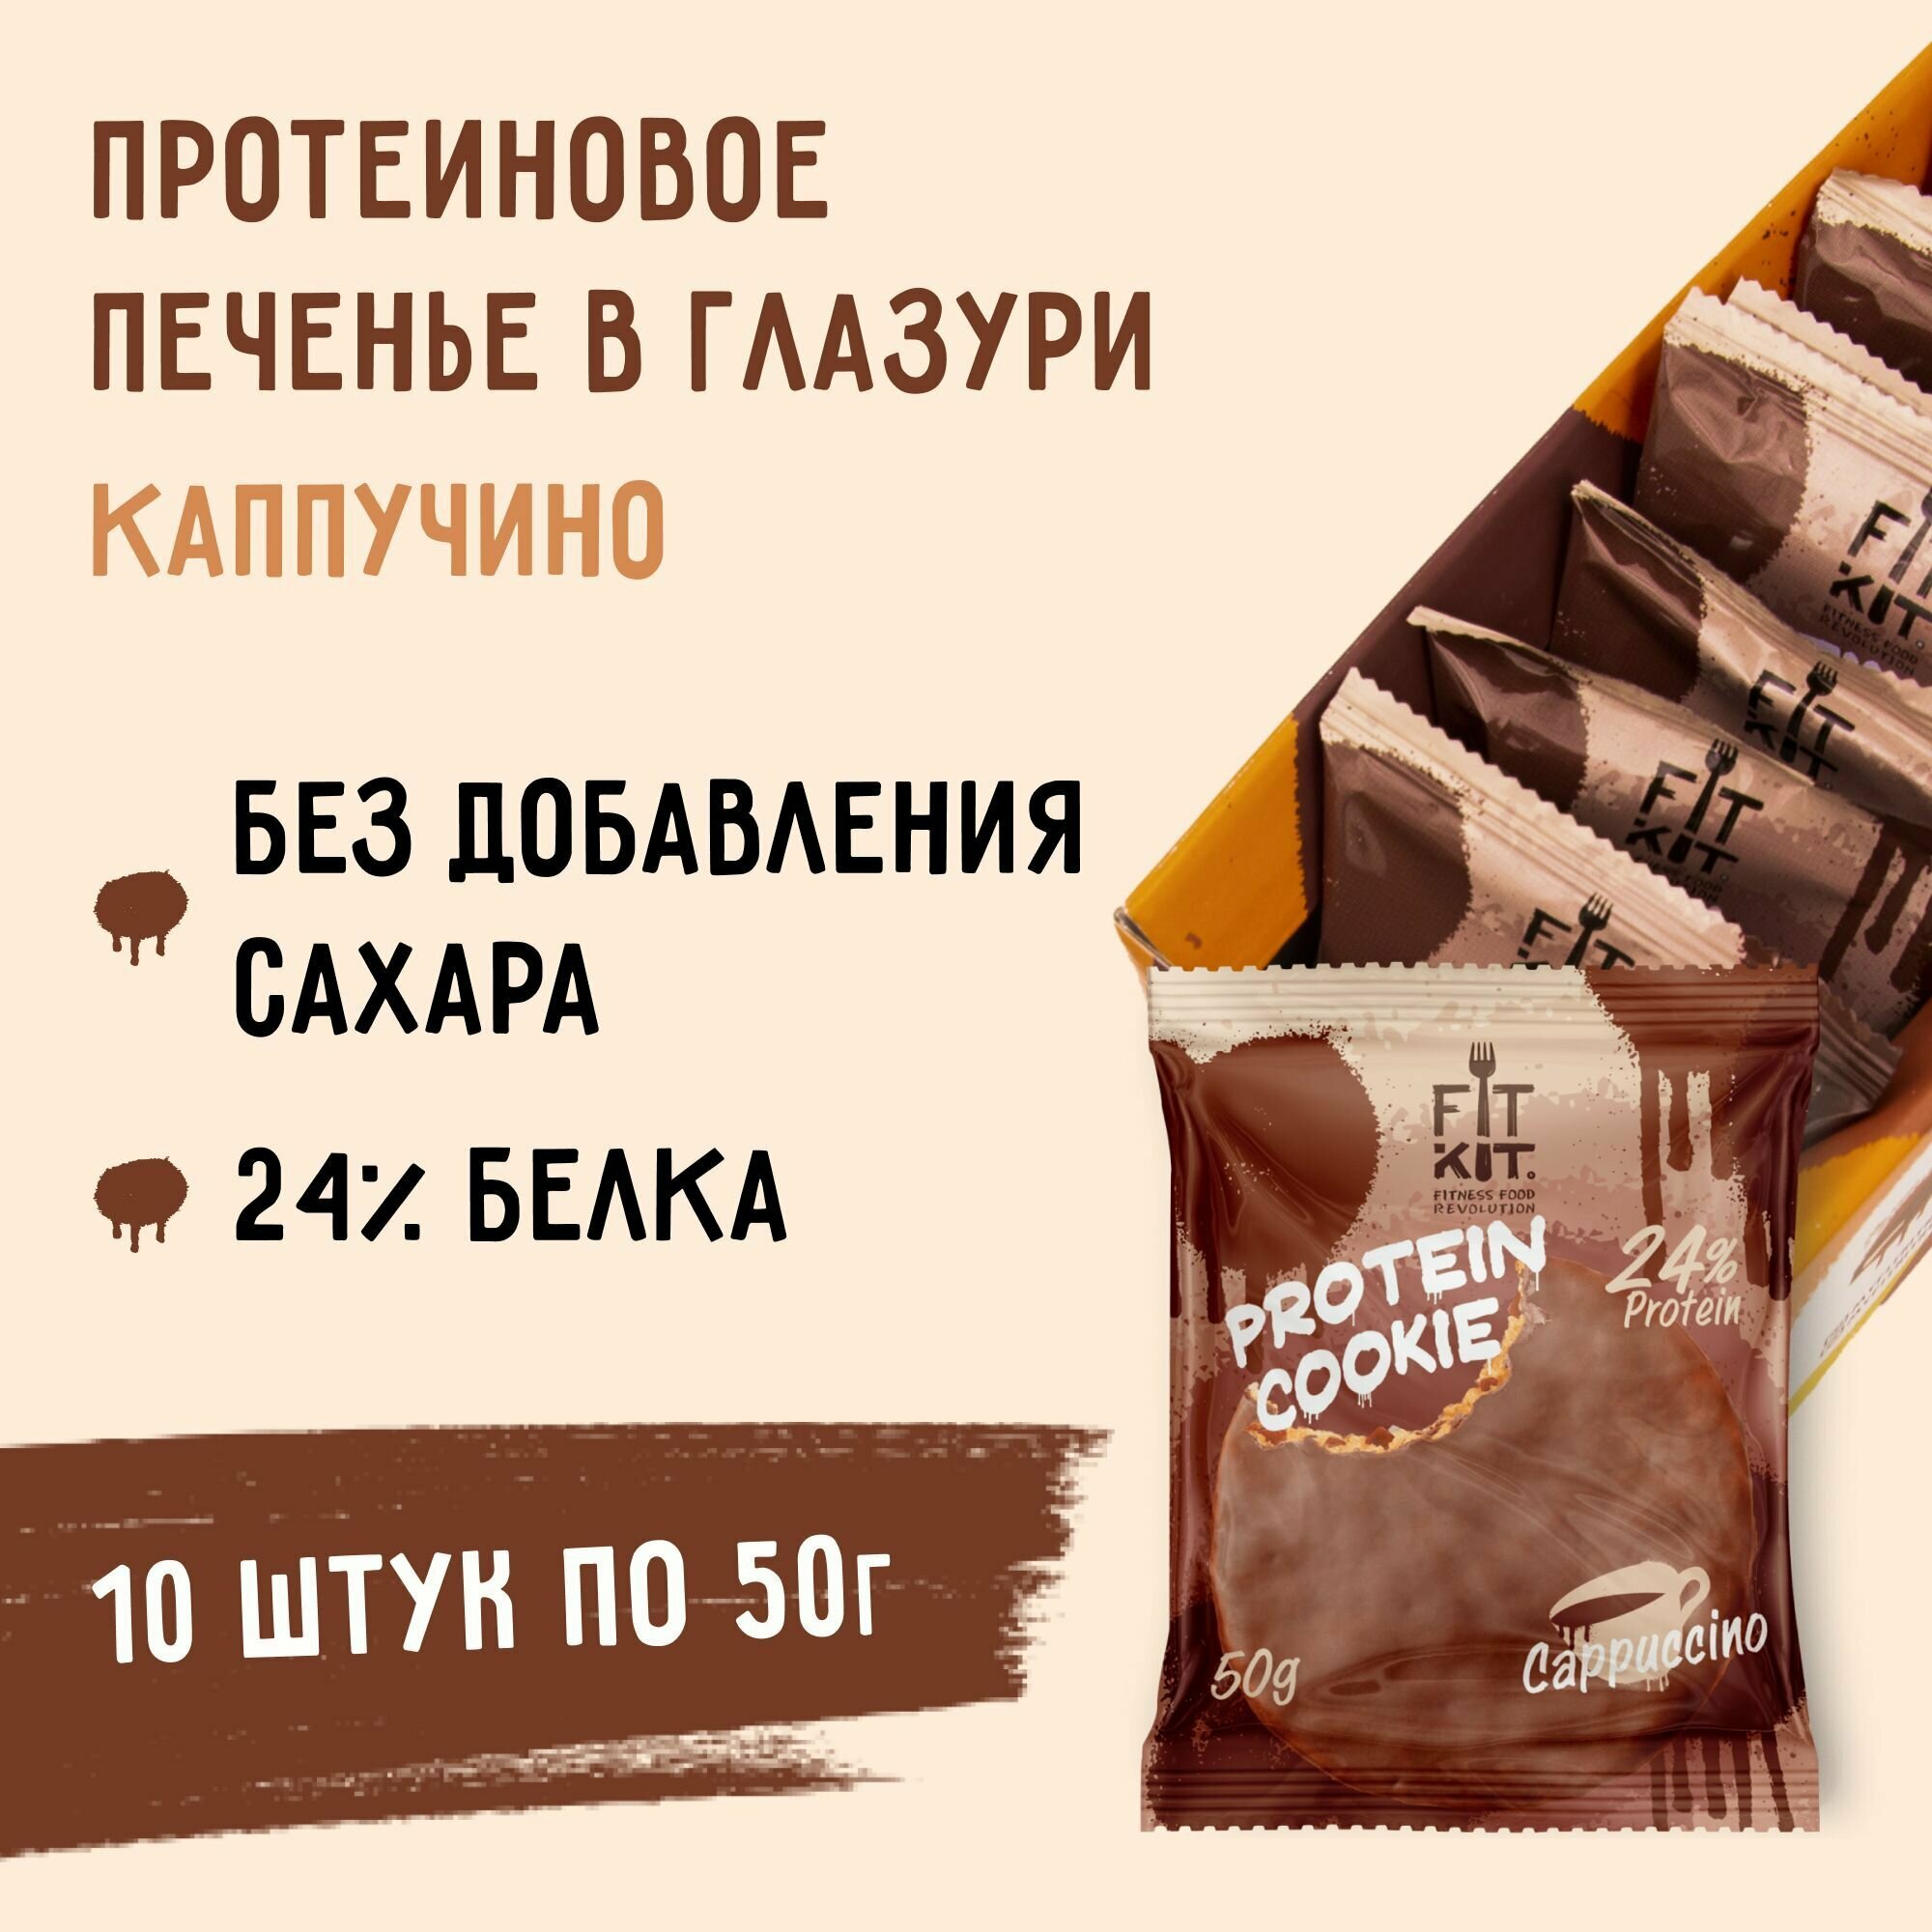 Протеиновое печенье в шоколаде без сахара Fit Kit Chocolate Protein Cookie, 10шт x 50г (капучино)